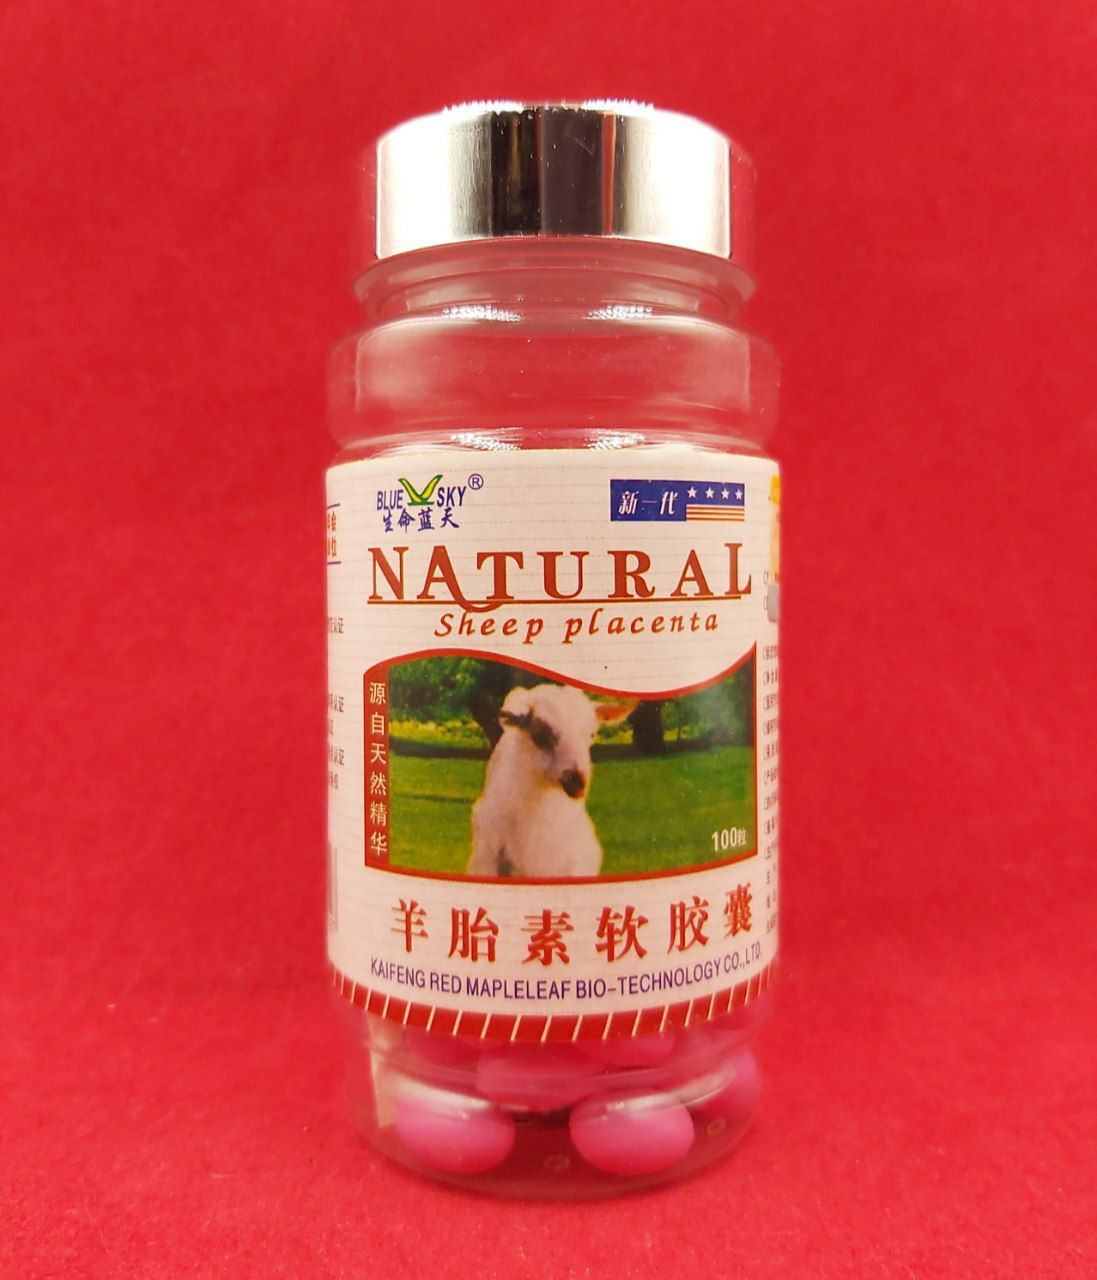 Капсулы Овечья плацента (Sheep placenta) natural для красоты и молодости